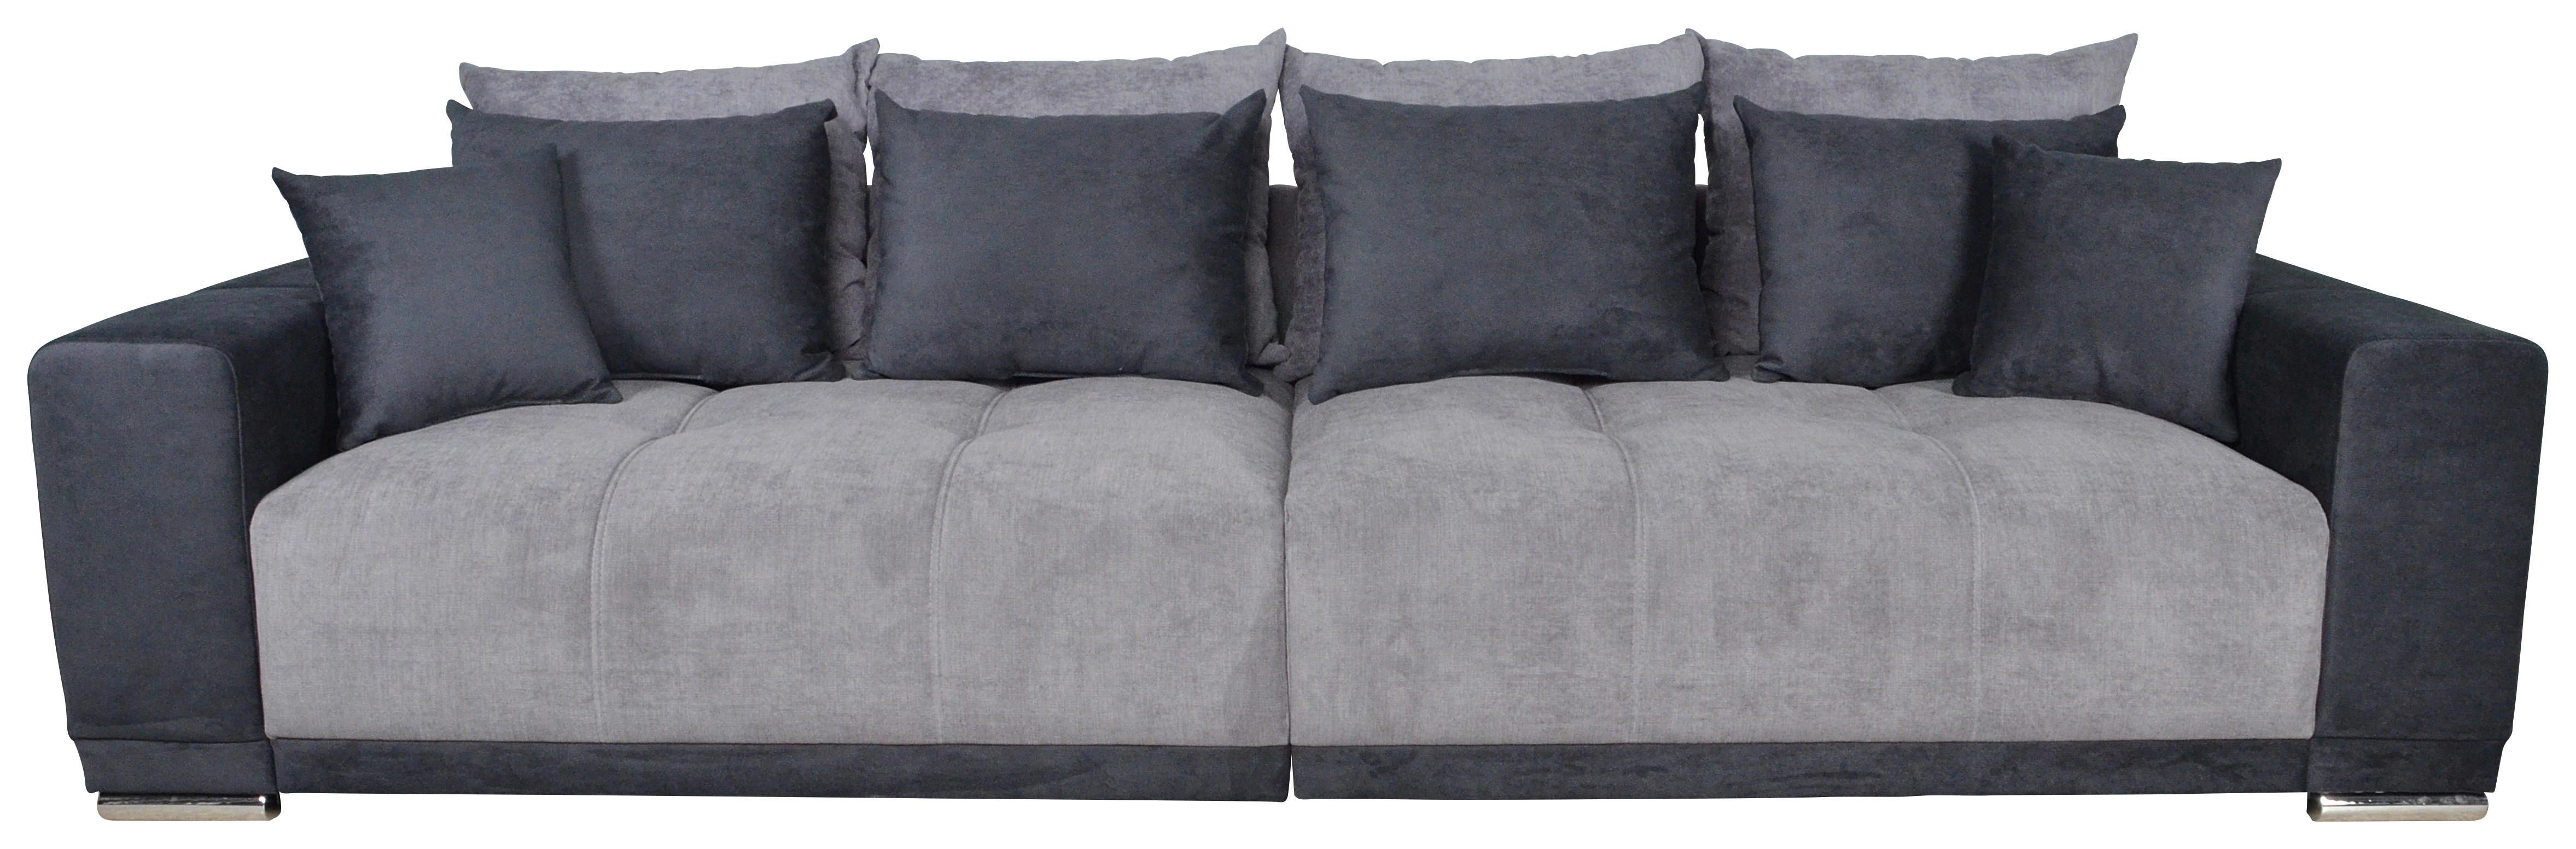 Big Sofa Xantia grau T: ca. 120 cm Xantia - Chrom/grau (120,00cm)